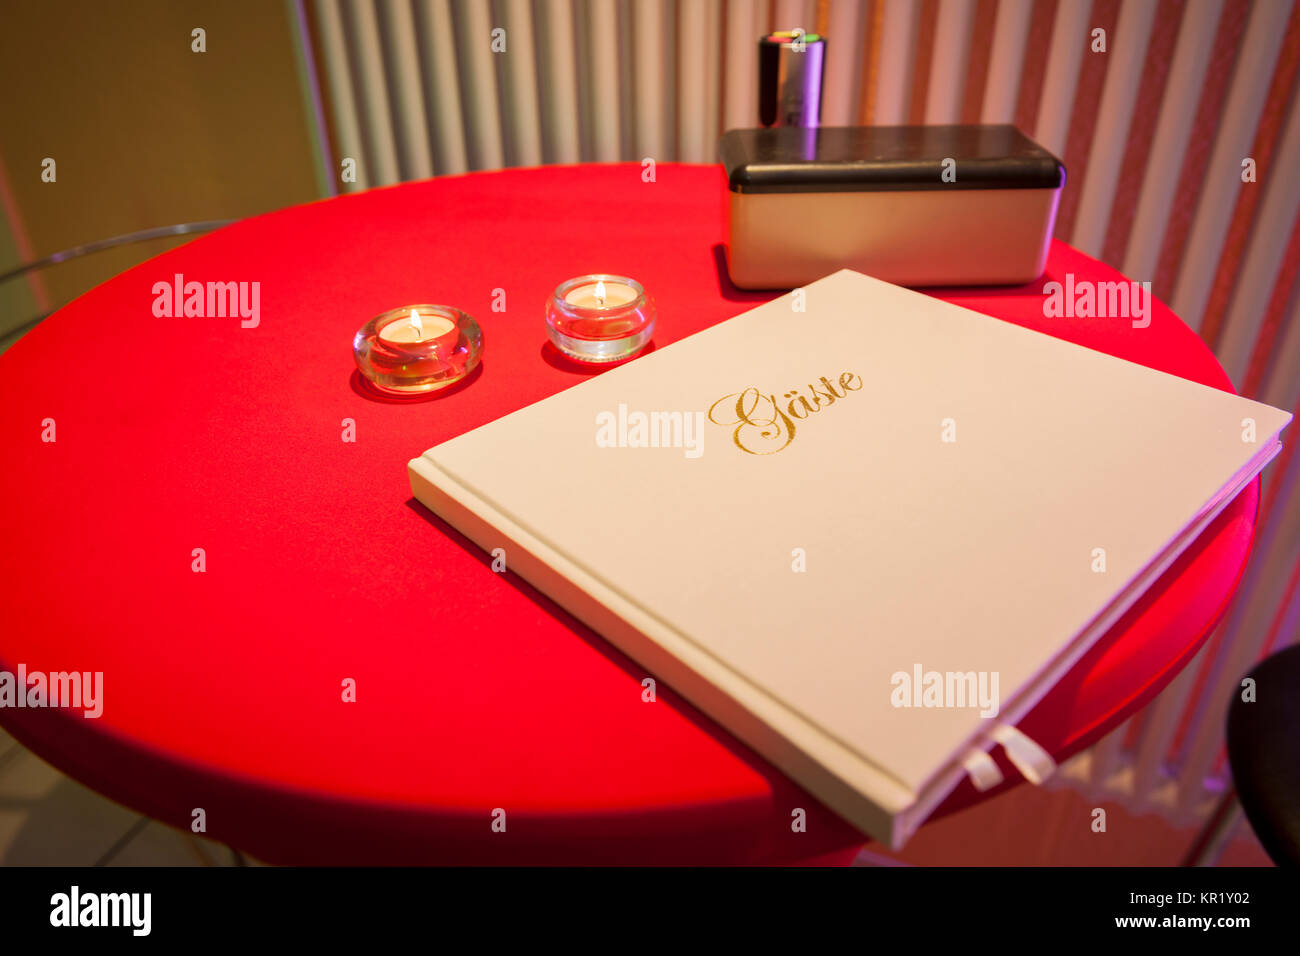 Nahaufnahme eines roten Stehstisches runden mit Gästebuch und Teelicht Foto Stock